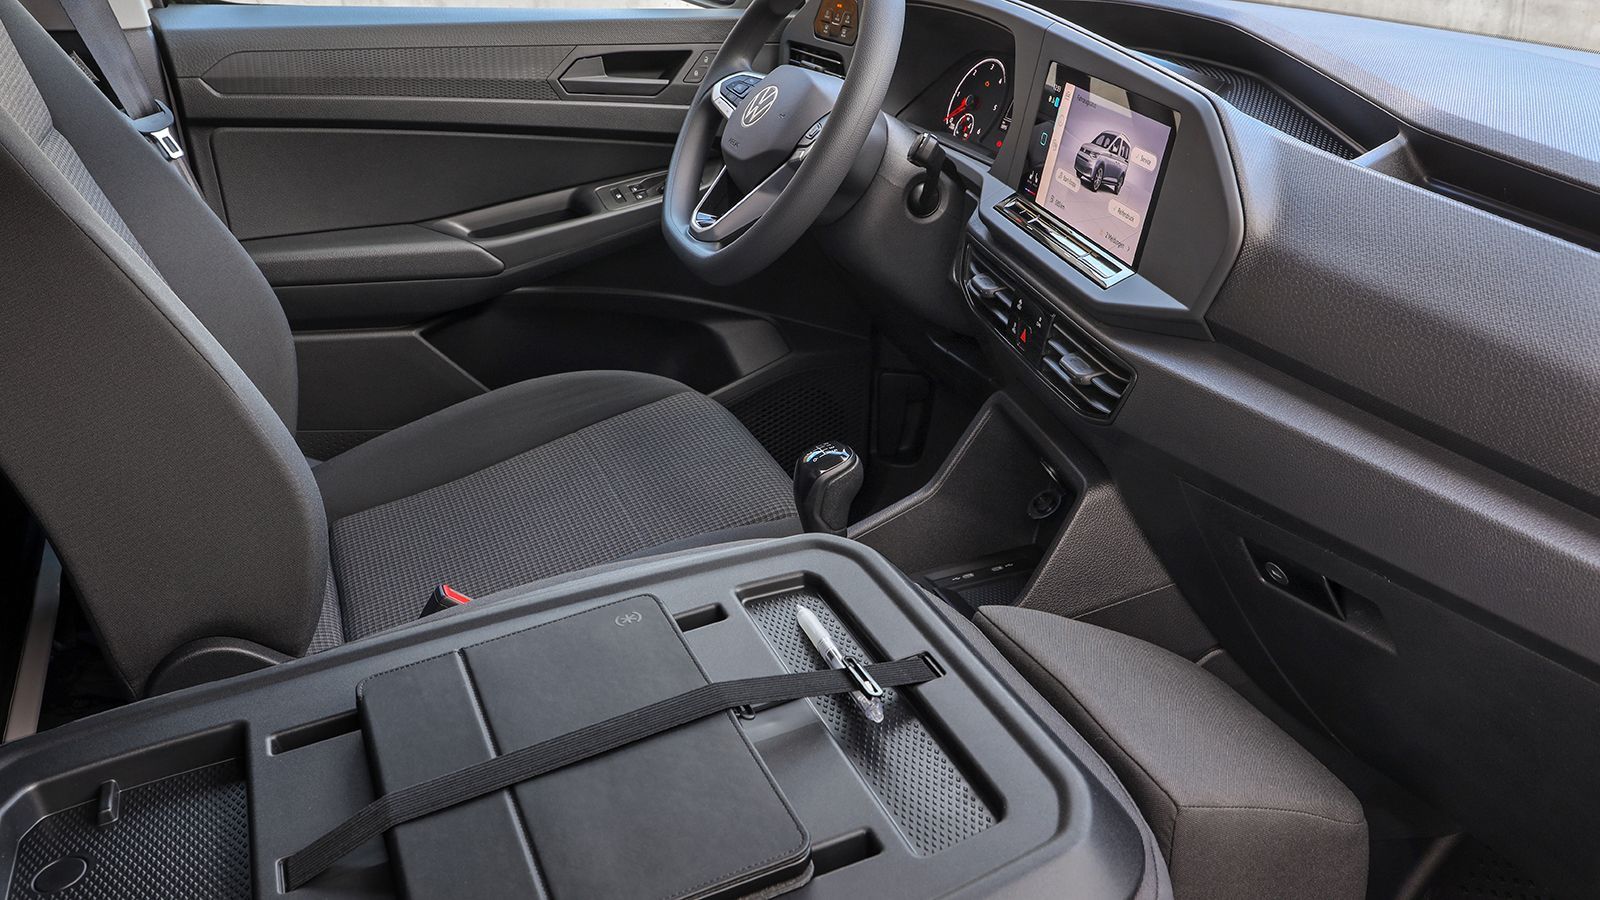 Ένα νέο χαρακτηριστικό στην καμπίνα του Caddy είναι το αναδιπλούμενο κάθισμα συνοδηγού με ένα ακόμα πιο ανθεκτικό πίσω πάνελ, το οποίο μπορεί να αποτελέσει και ένα γραφείο του οδηγού.